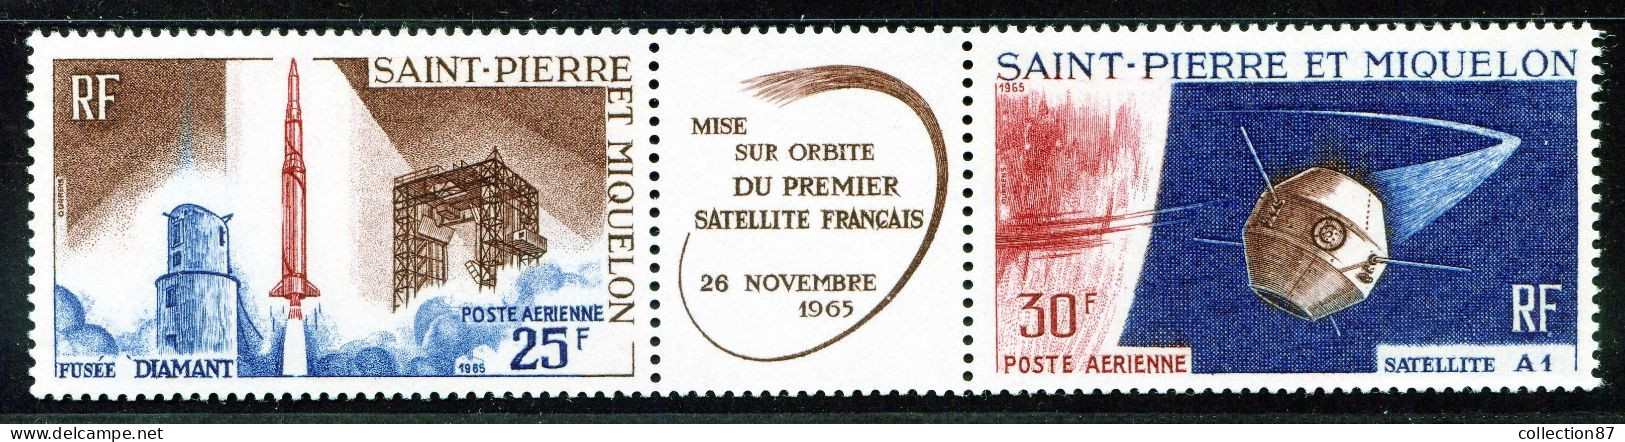 REF 086 > SAINT PIERRE Et MIQUELON < PA N° 34A * * < Neuf Luxe Voir Dos - MNH * * < SPM Poste Aérienne - Aéro  Air Mail - Unused Stamps